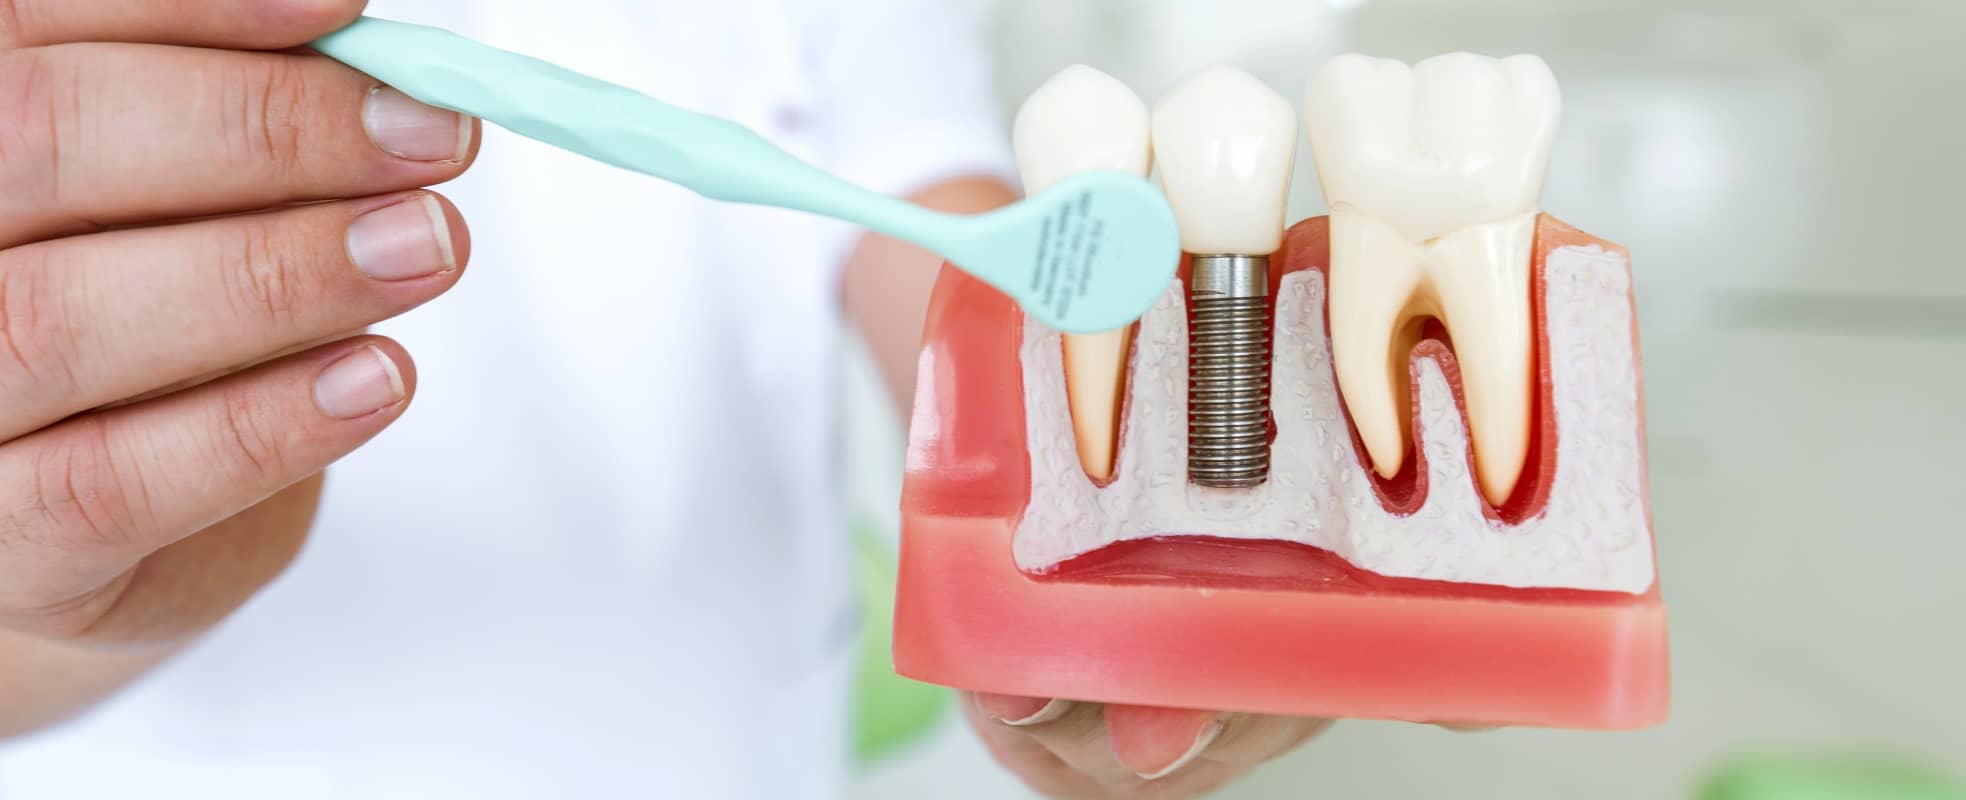 Tout savoir sur la pose d’implant dentaire | Dr Elhyani | Paris